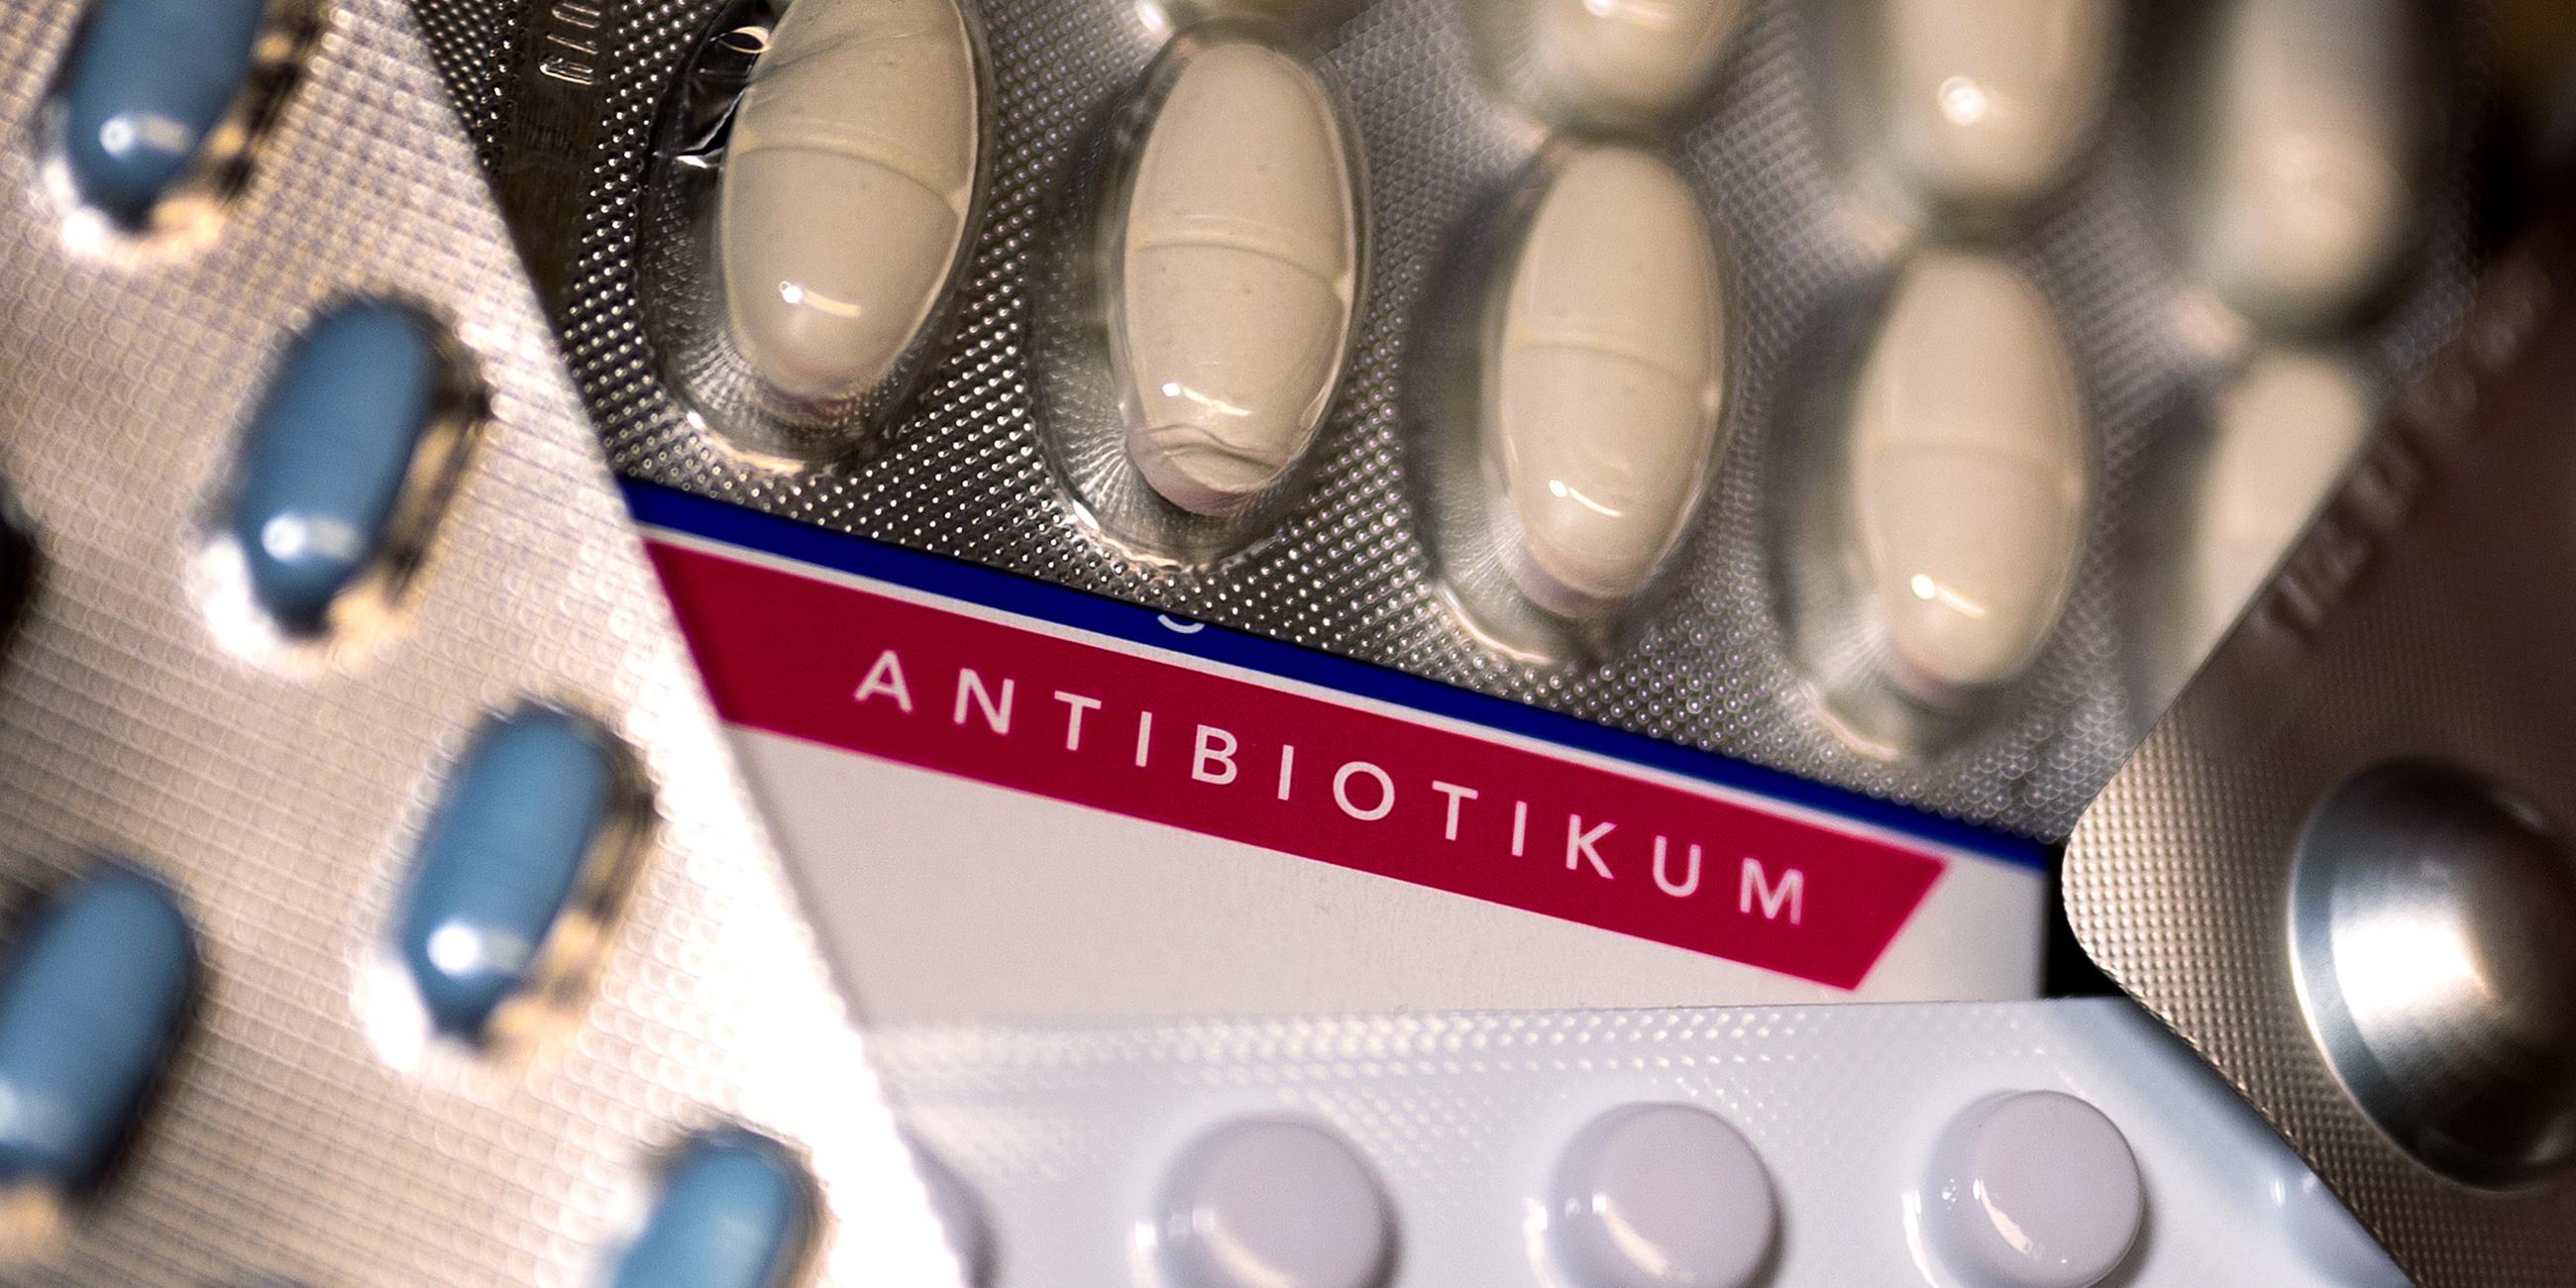 Es sind mehrere Packungen von Antibiotika zu sehen.